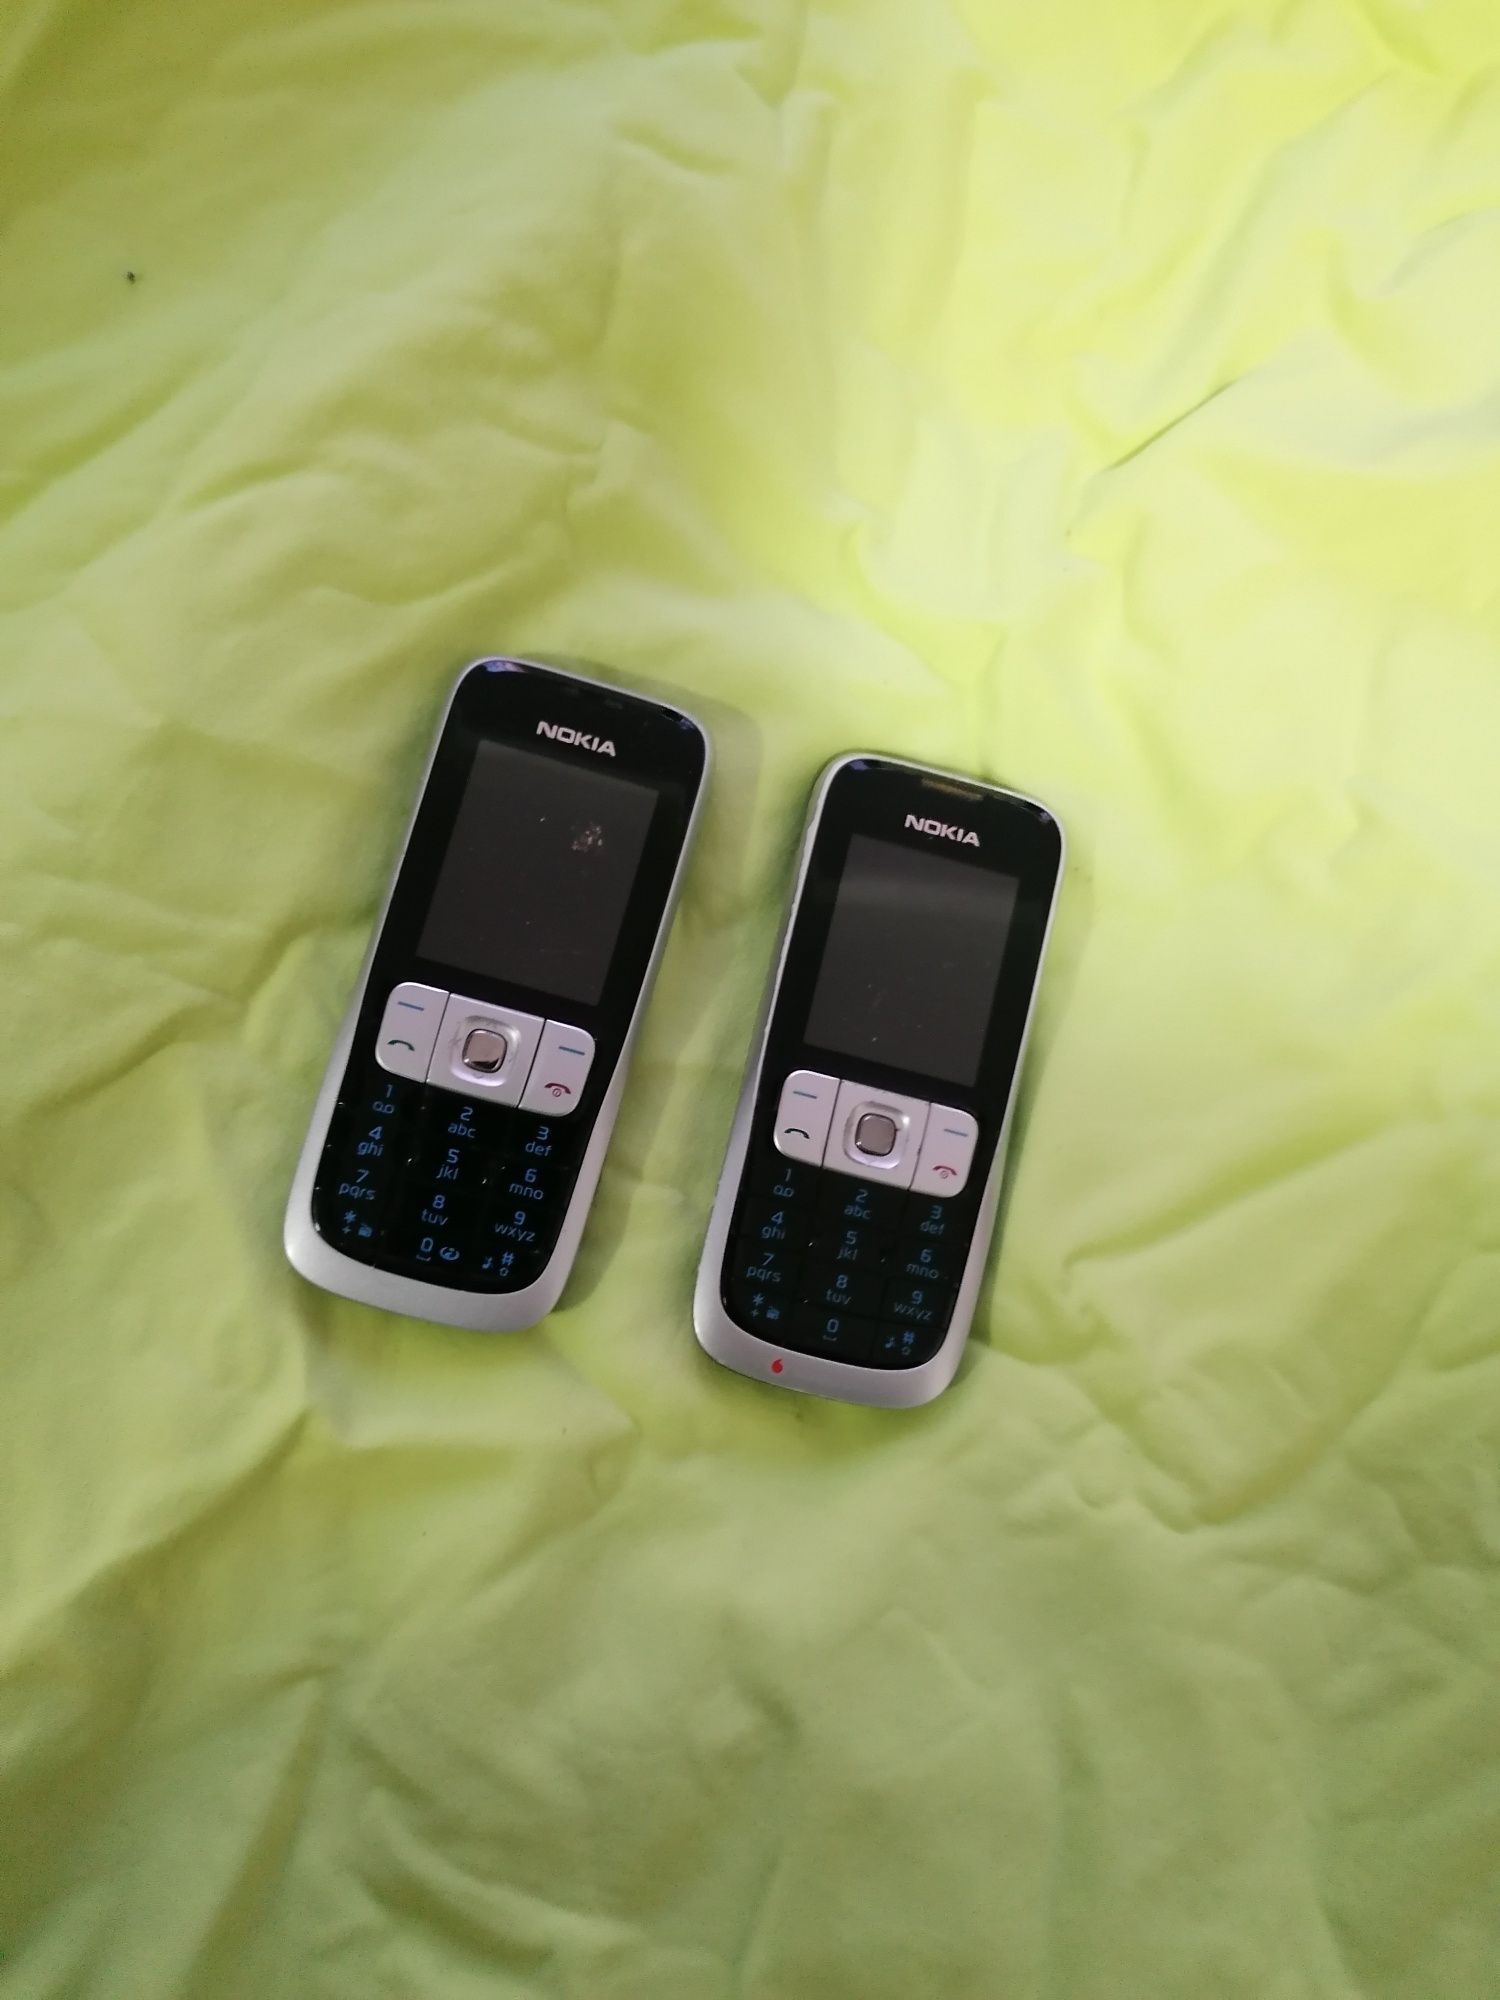 Vând Nokia 2630 liber de rețea trimit și prin curier sau posta